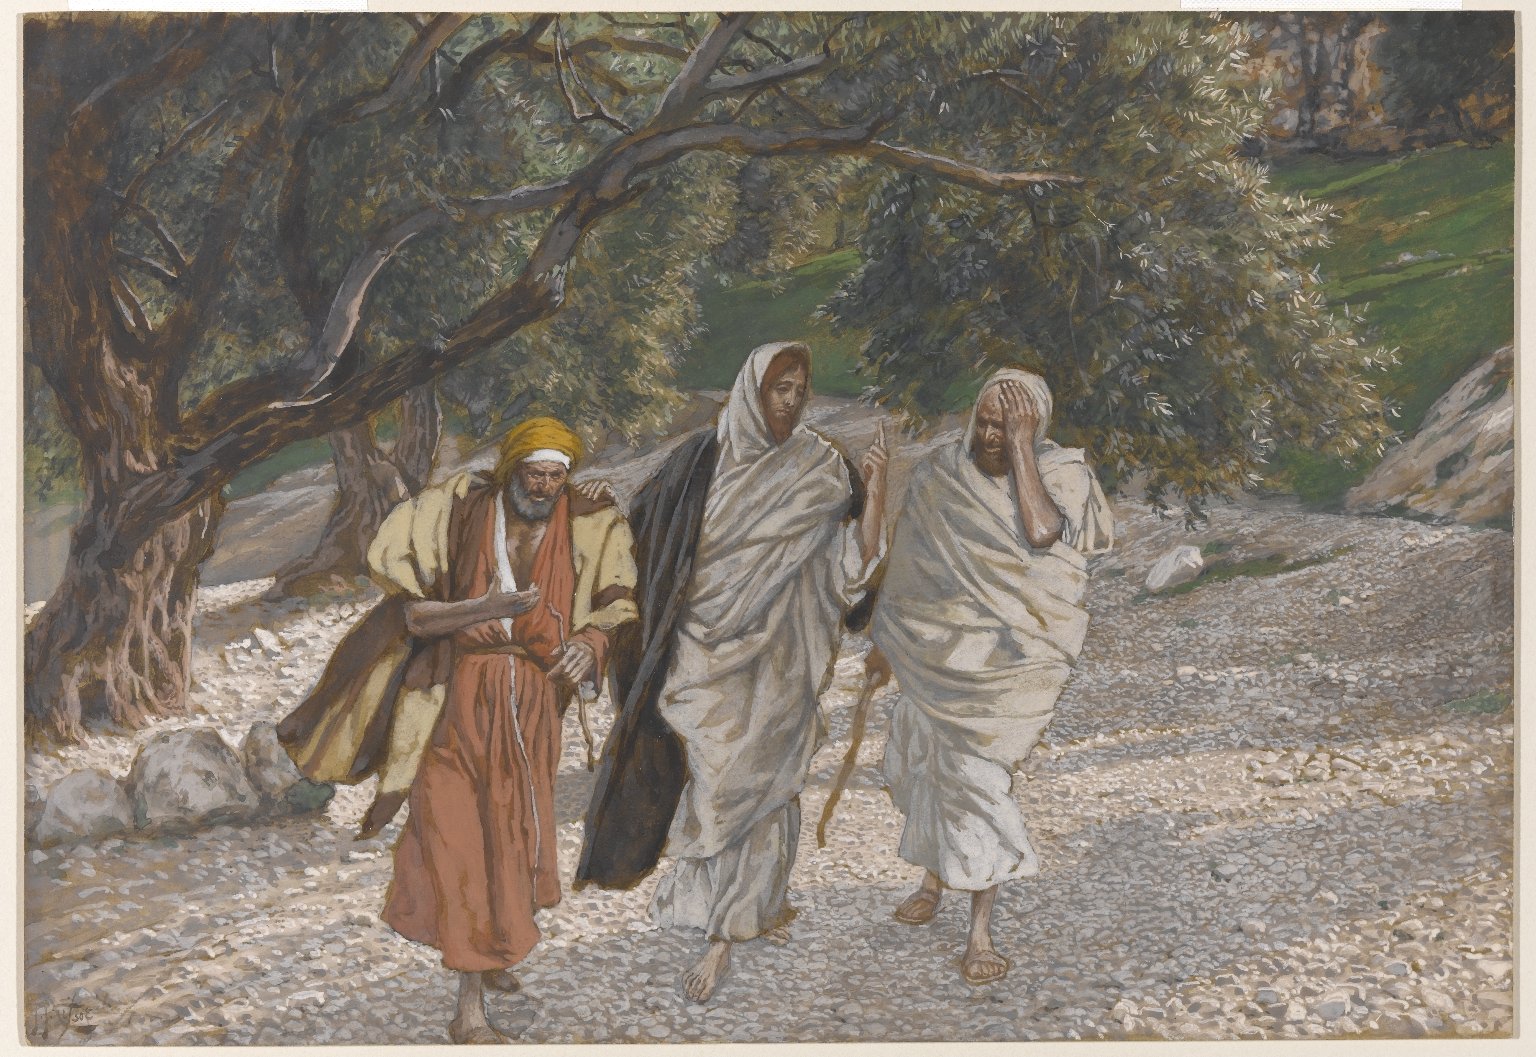 Tissot The Pilgrims of Emmaus on the Road (Les pèlerins d'Emmaüs en chemin)